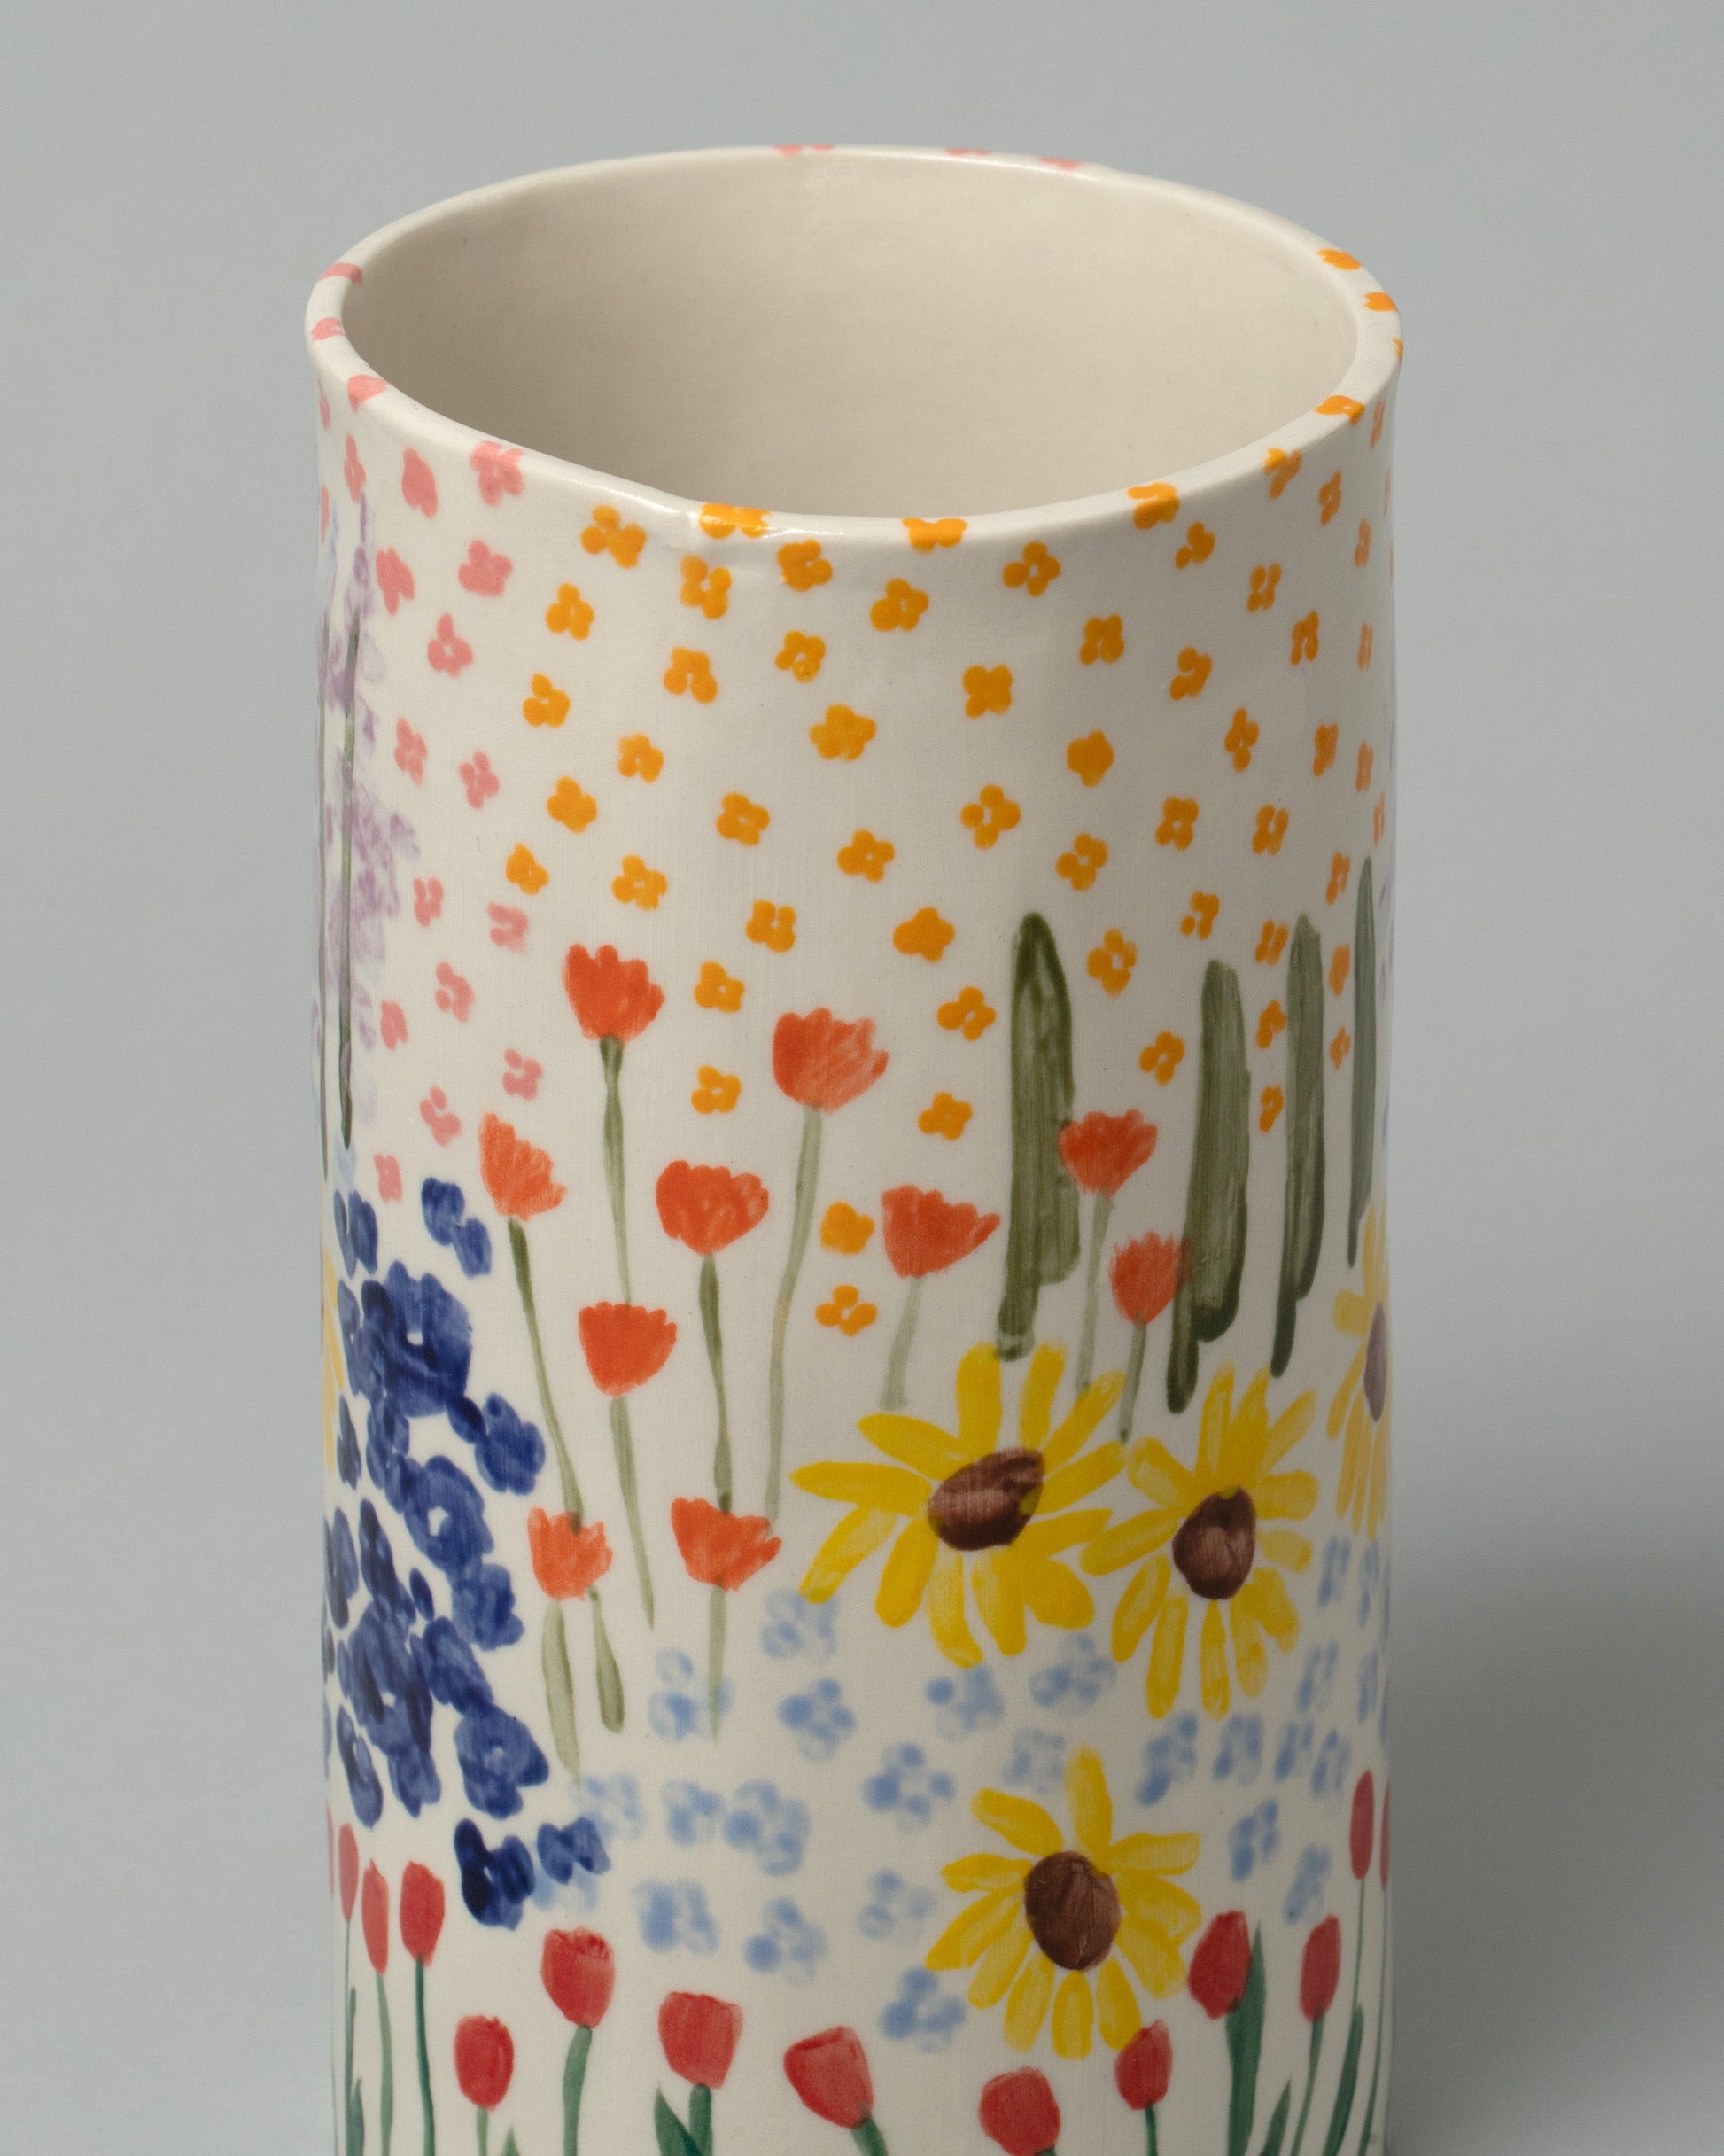 Closeup detail of the Amanda Lucia Côté Floral Vase on light color background.